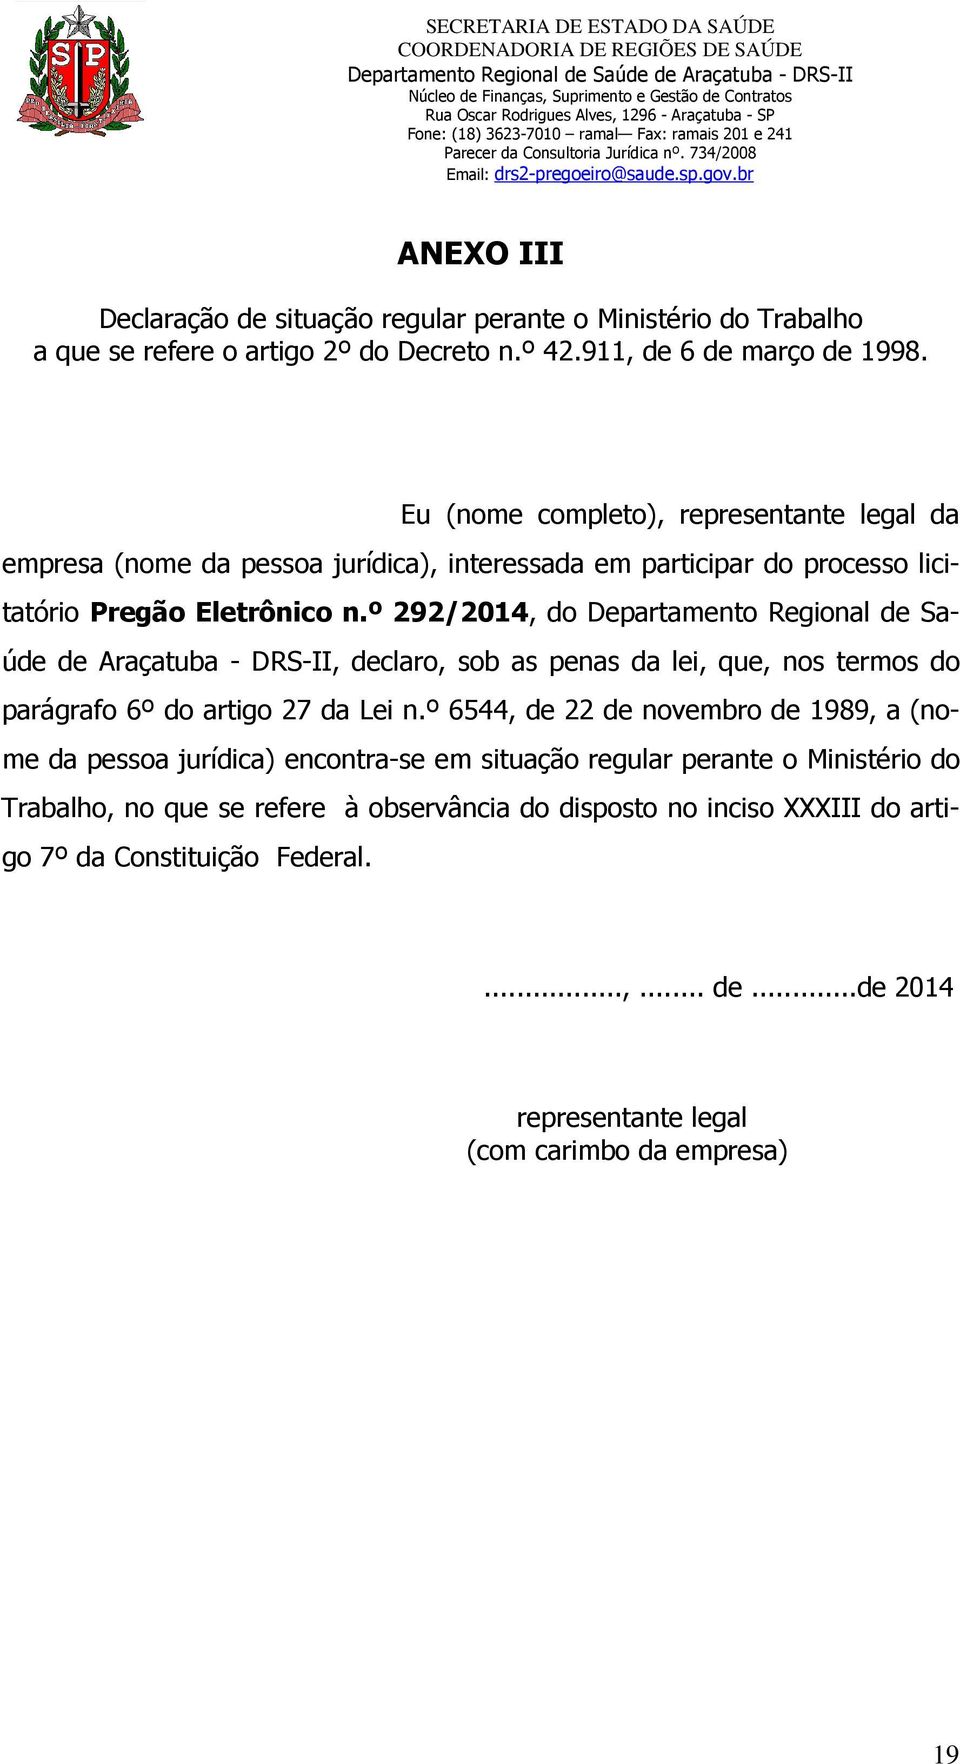 º 292/2014, do Departamento Regional de Saúde de Araçatuba - DRS-II, declaro, sob as penas da lei, que, nos termos do parágrafo 6º do artigo 27 da Lei n.